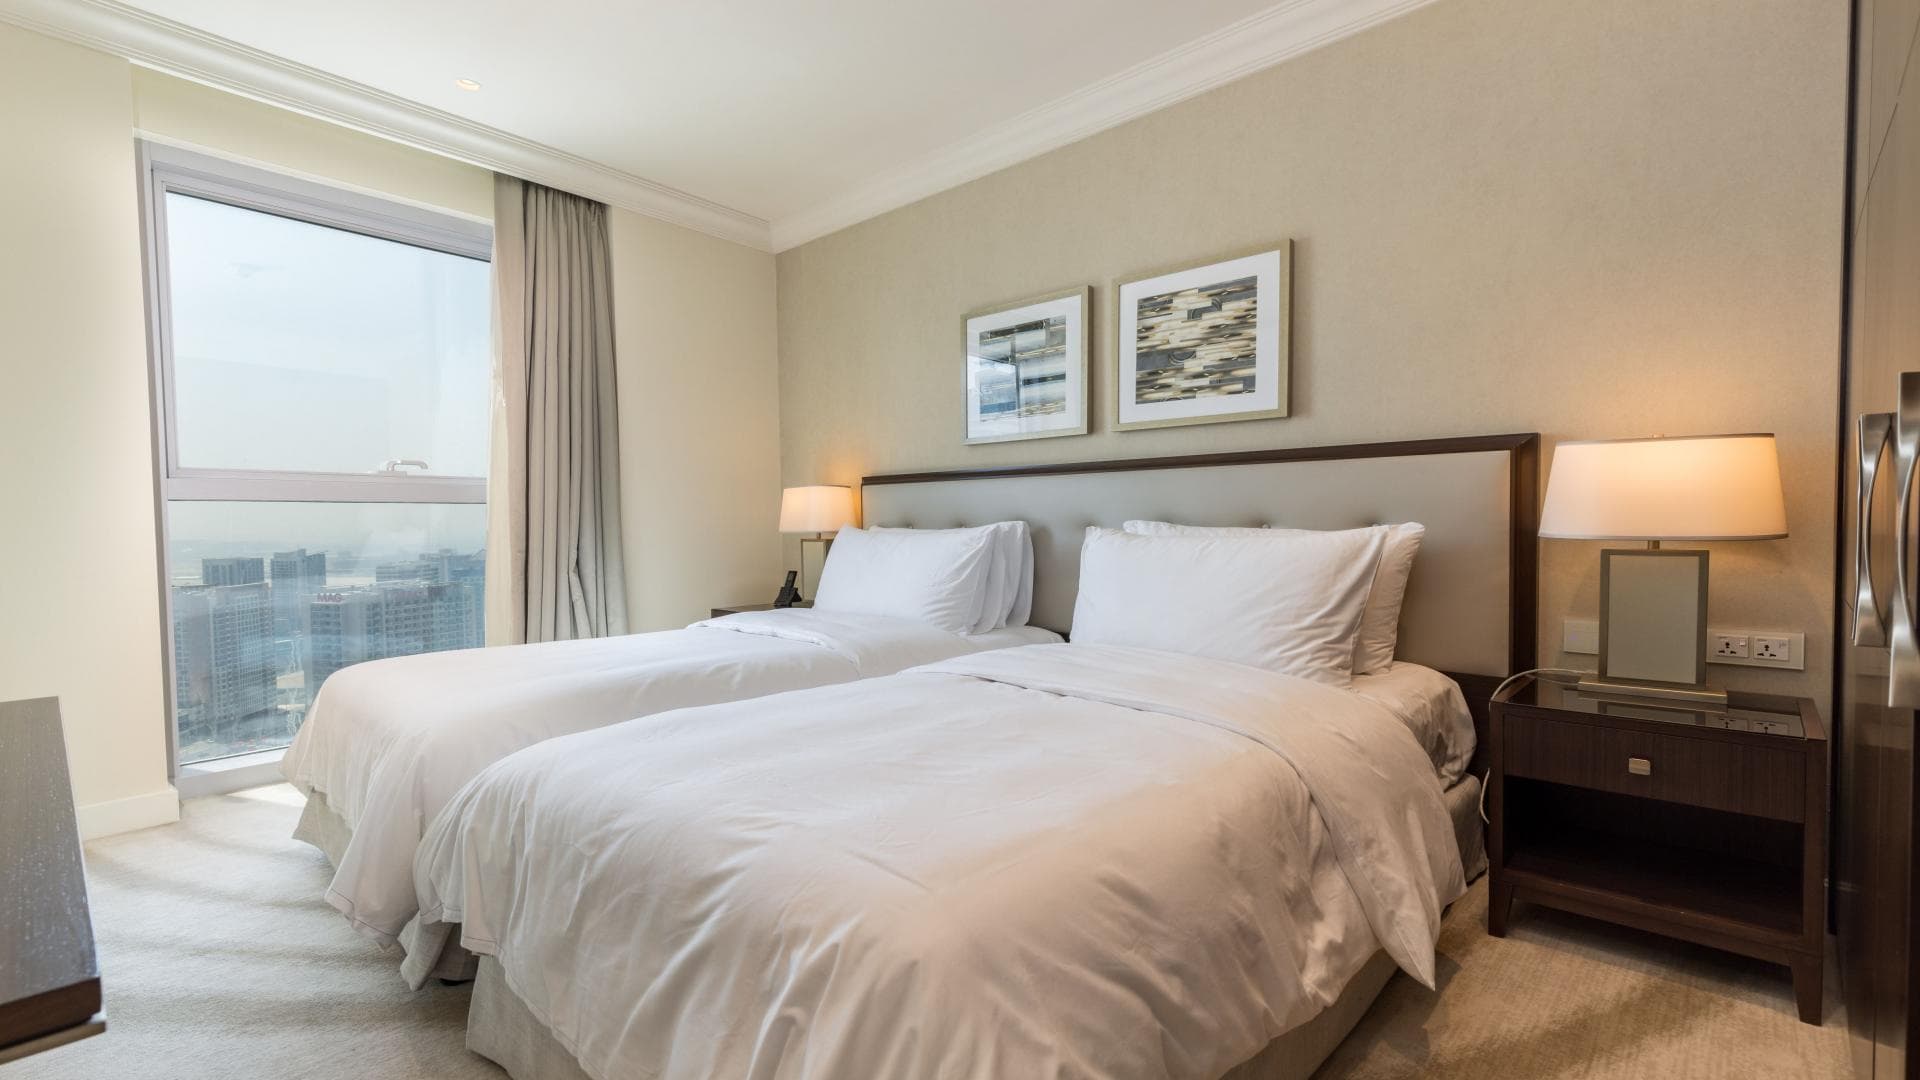 2 Bedroom Apartment For Rent Al Thamam 09 Lp36349 283a4b1bb0998e00.jpeg